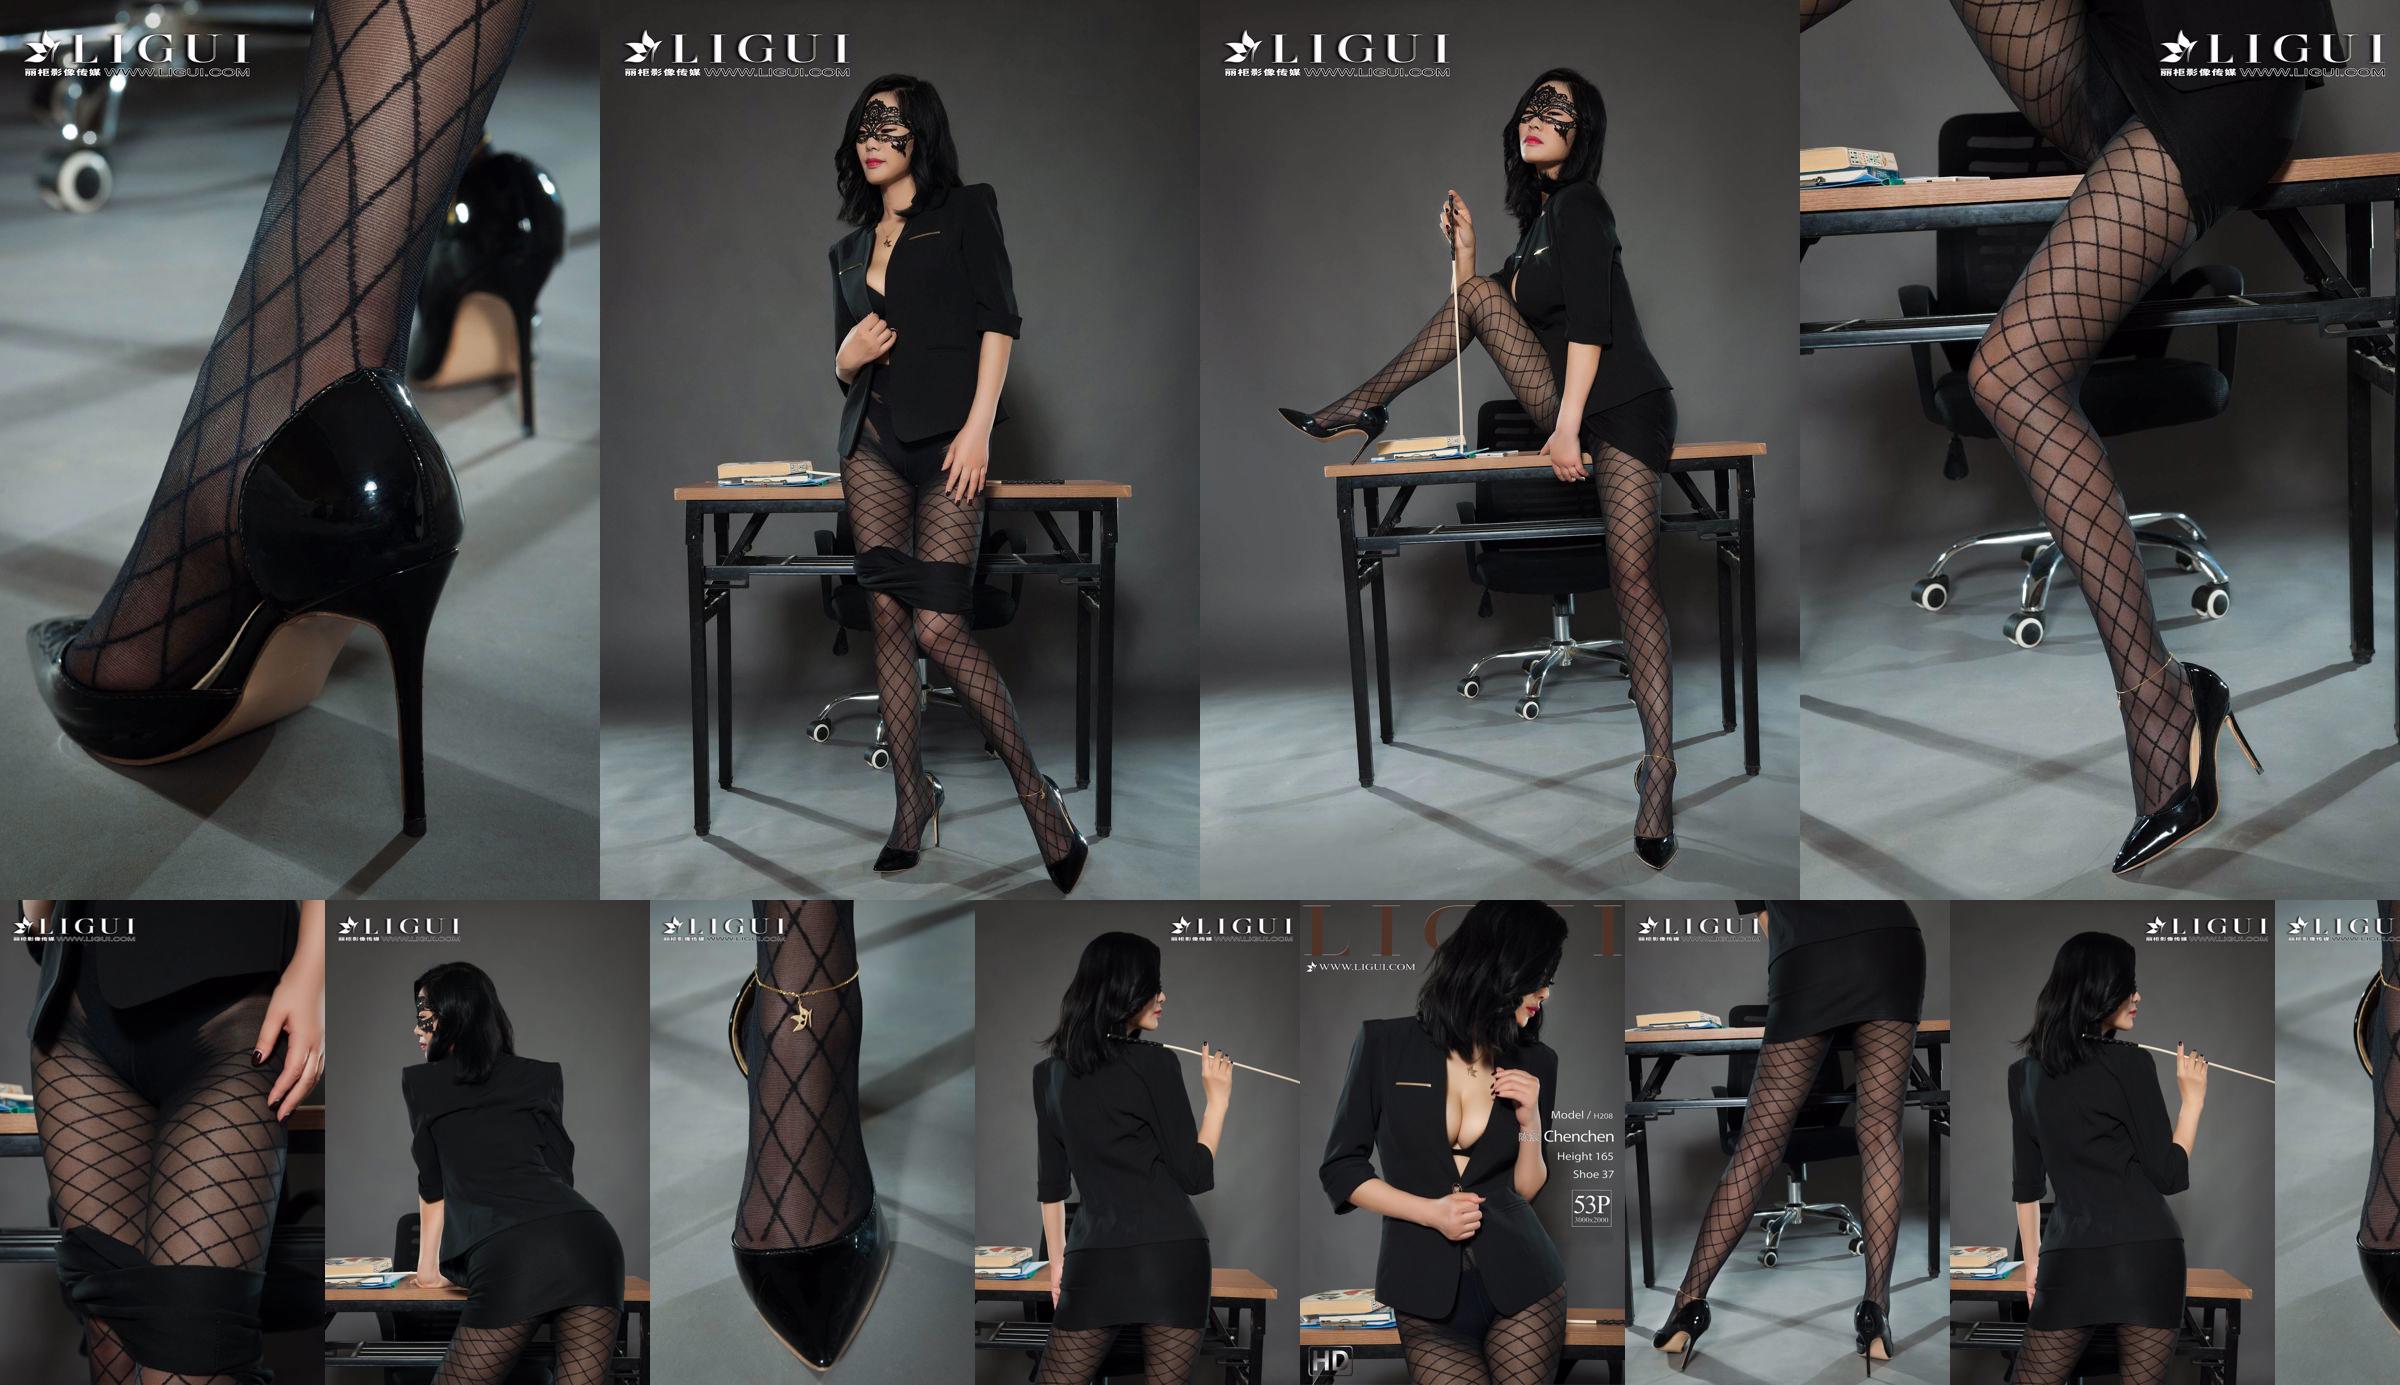 Người mẫu chân Chen Chen "Black Silk Milf" [Ligui Liguil] Vẻ đẹp Internet No.85e949 Trang 26